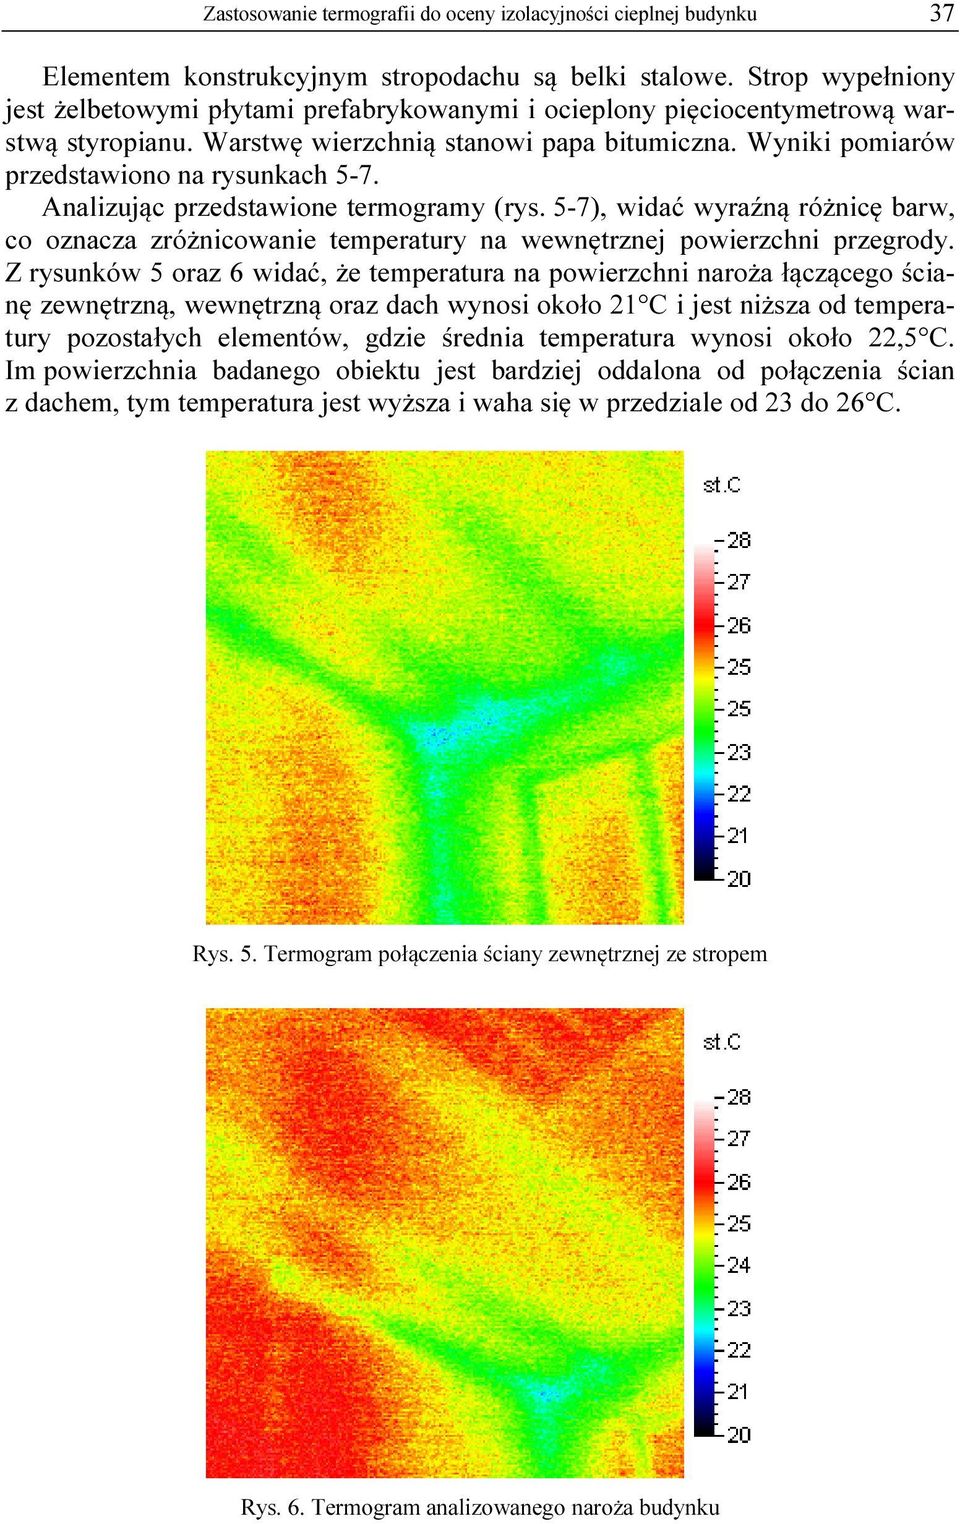 Wyniki pomiarów przedstawiono na rysunkach 5-7. Analizując przedstawione termogramy (rys. 5-7), widać wyraźną różnicę barw, co oznacza zróżnicowanie temperatury na wewnętrznej powierzchni przegrody.